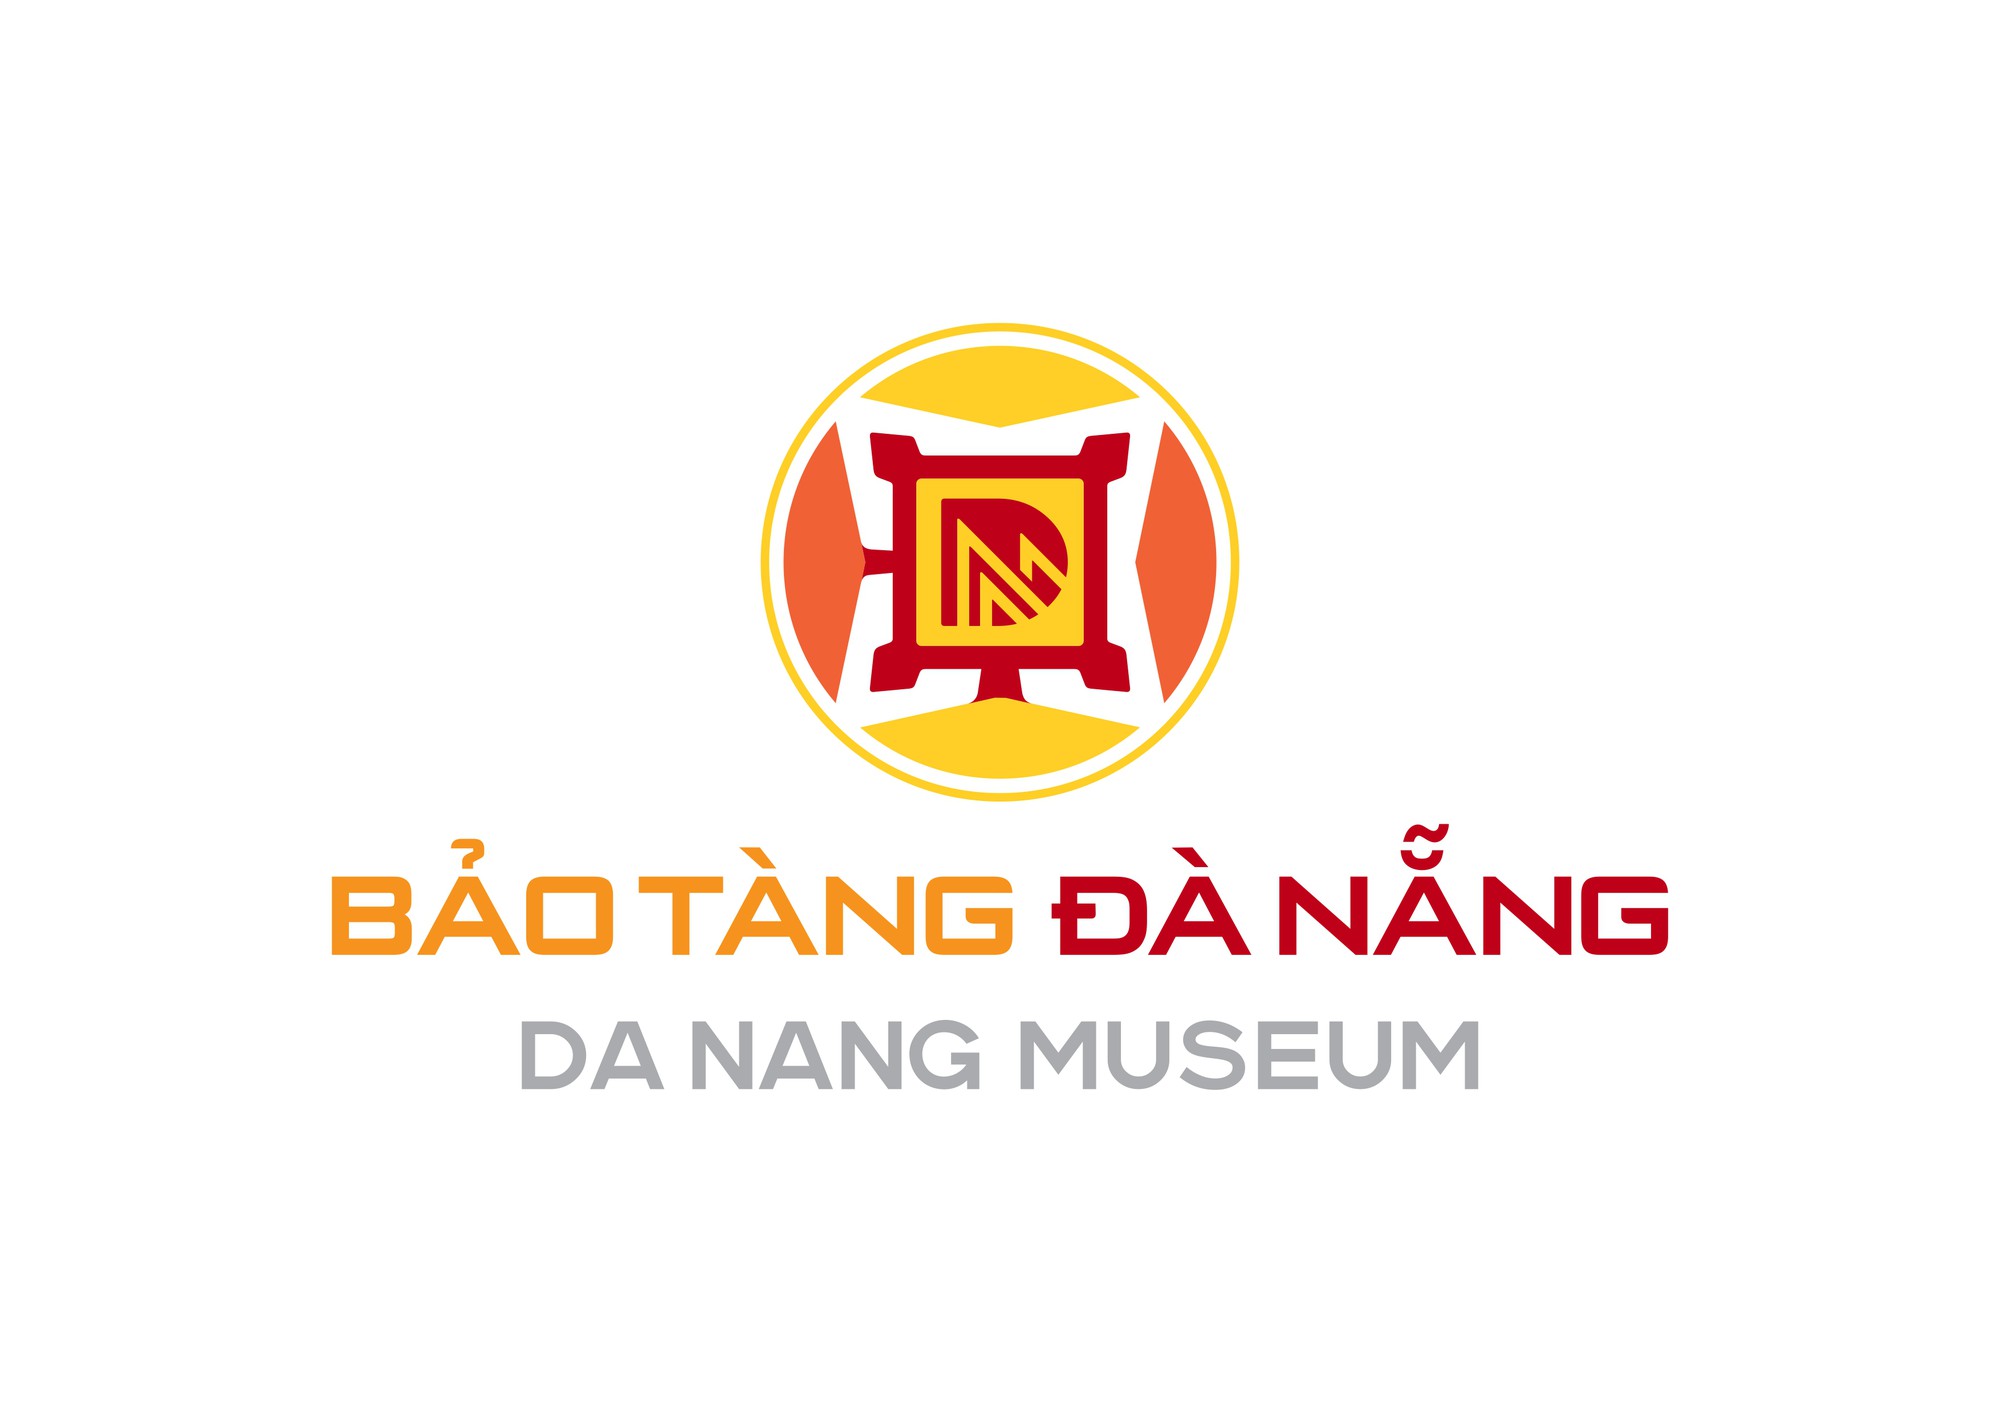 Ra mắt logo nhận diện Bảo tàng Đà Nẵng